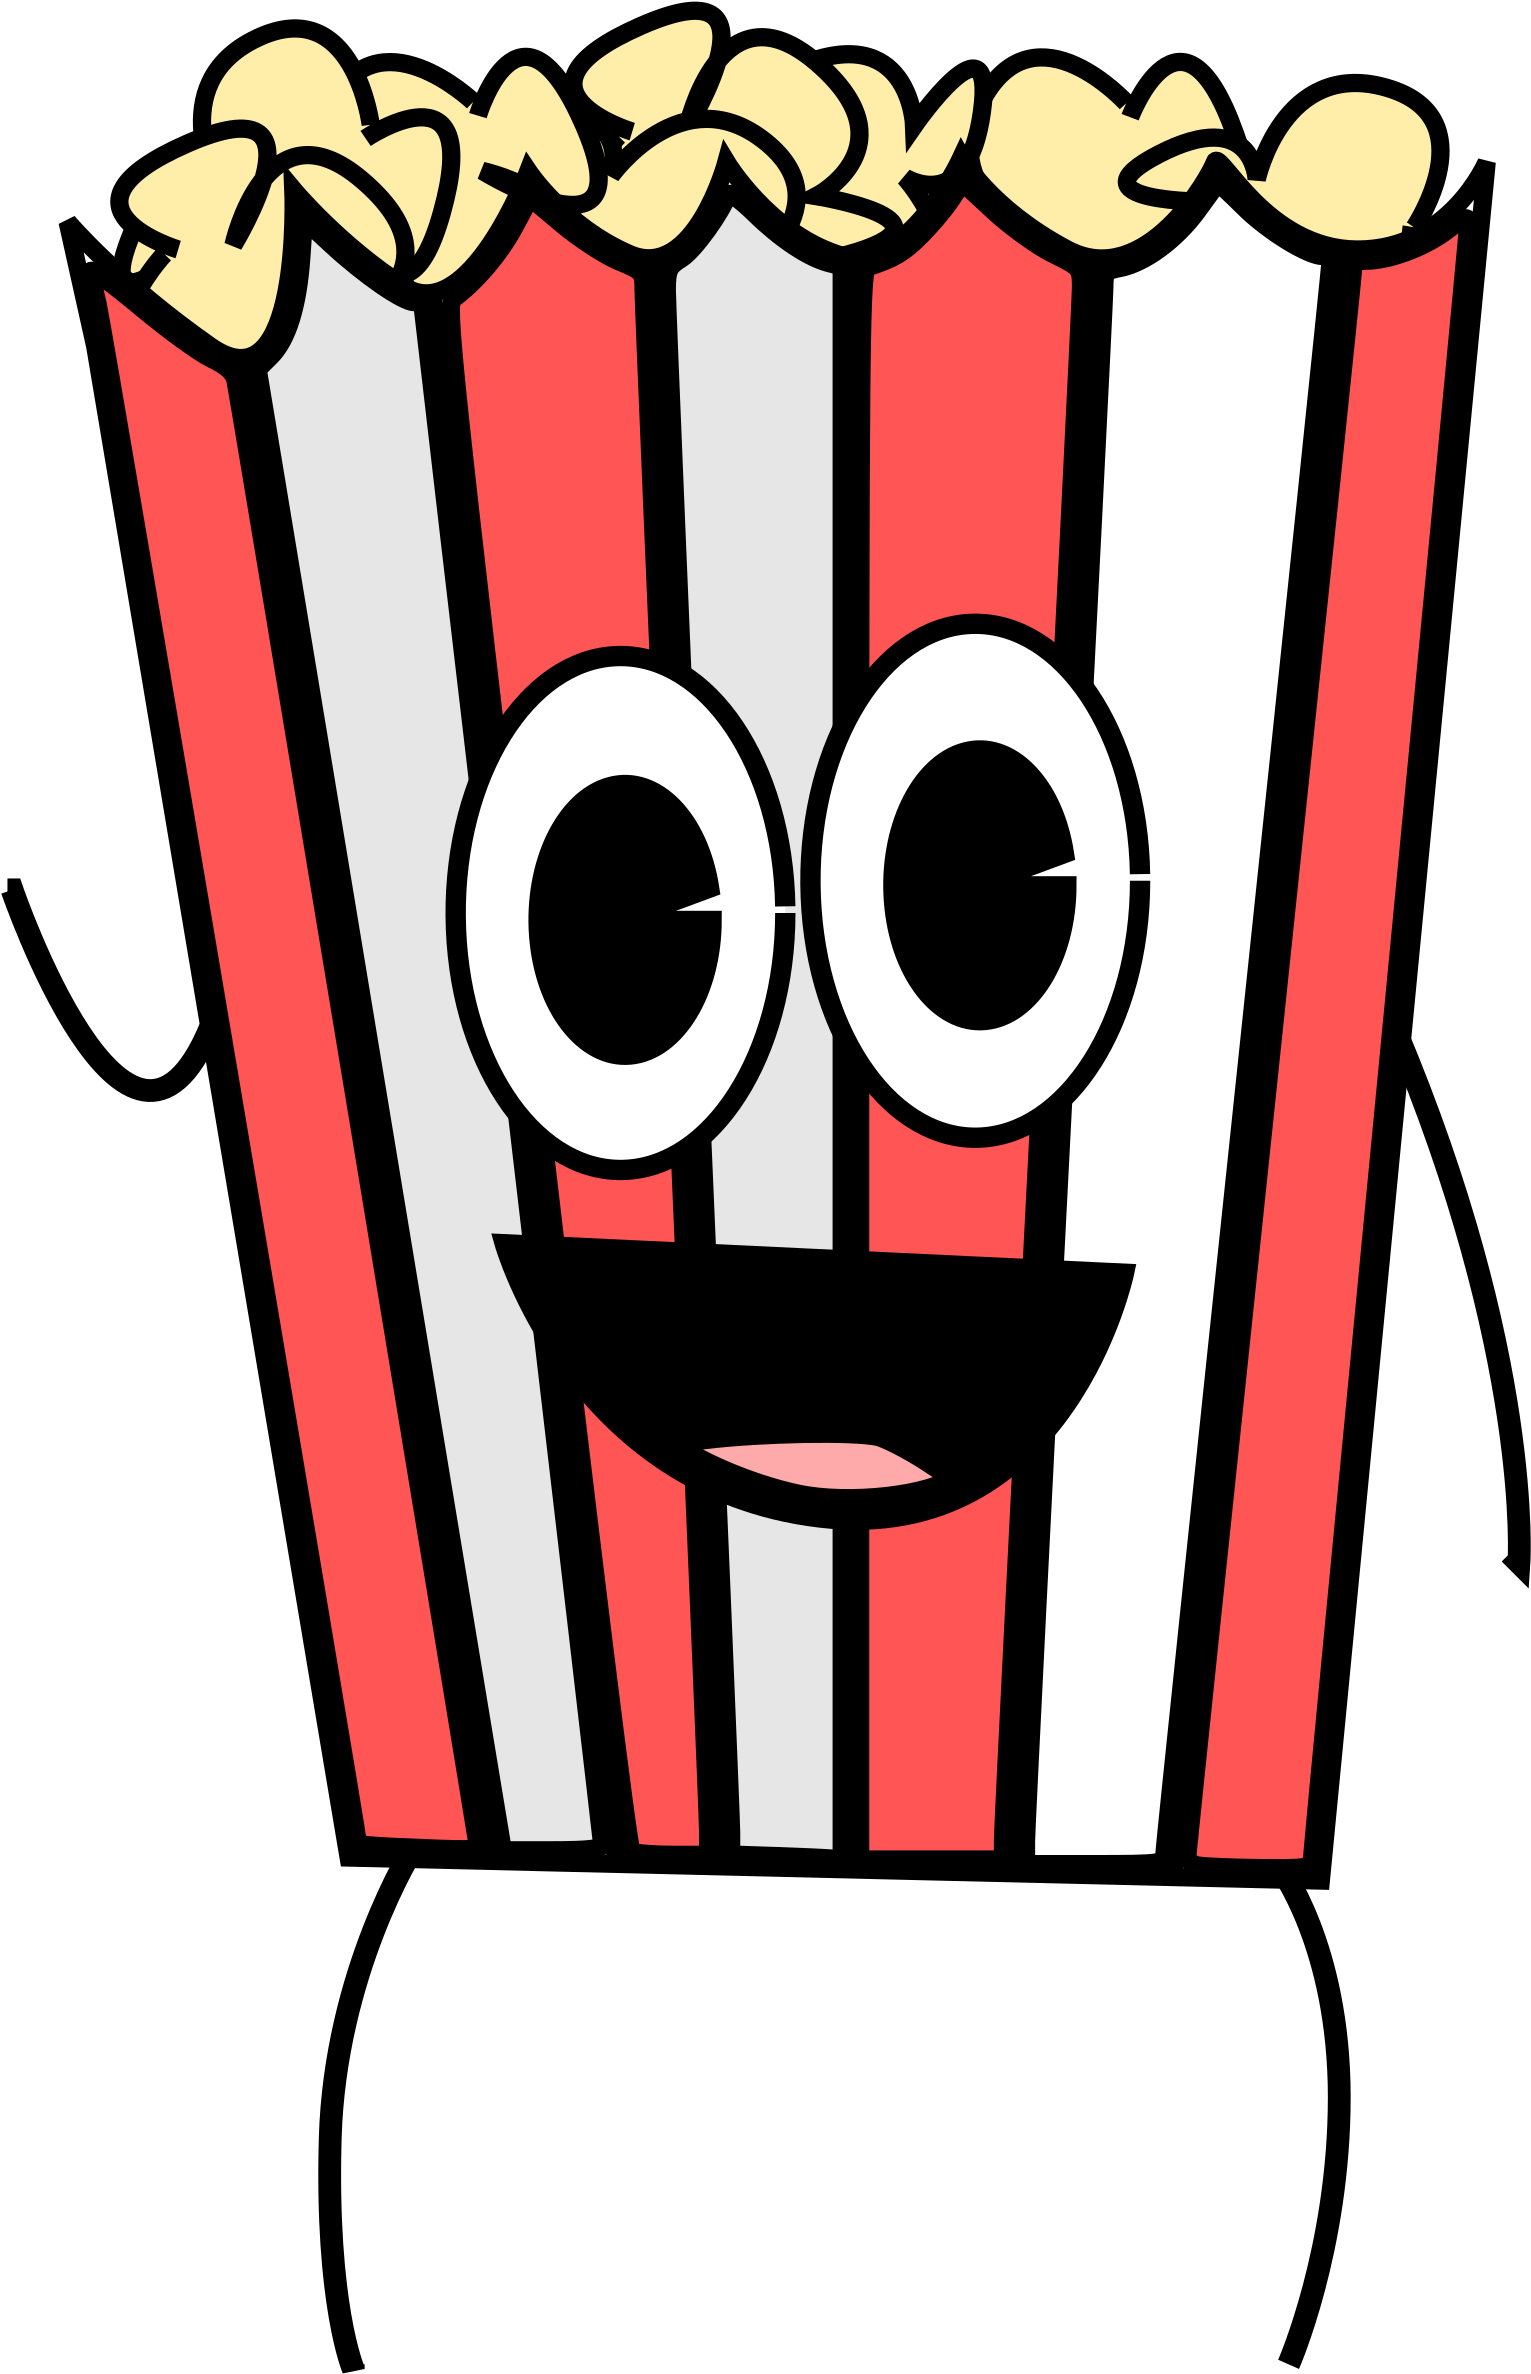 Big Image - Kartun Popcorn (1697x2400)